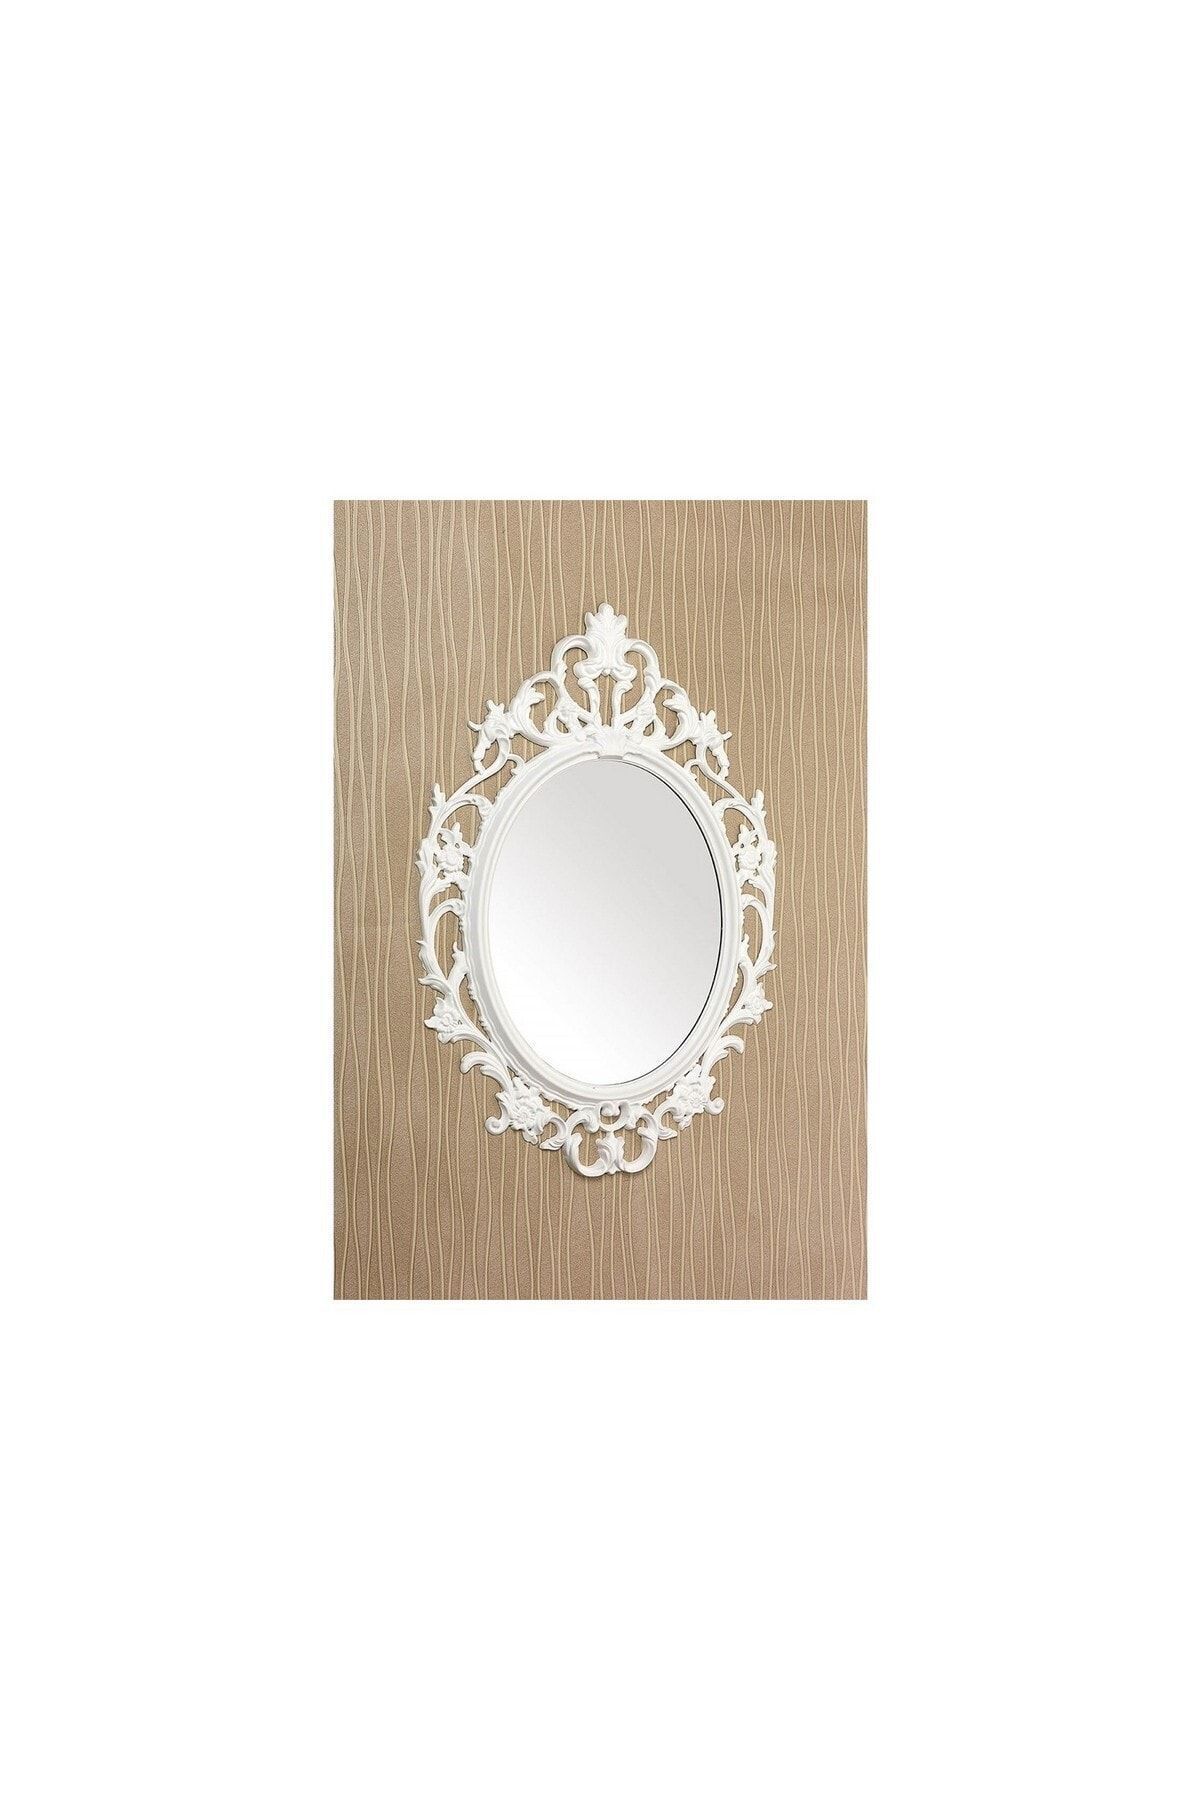 Tuğbasan Dekoratif Boyalı Ayna 881 Beyaz